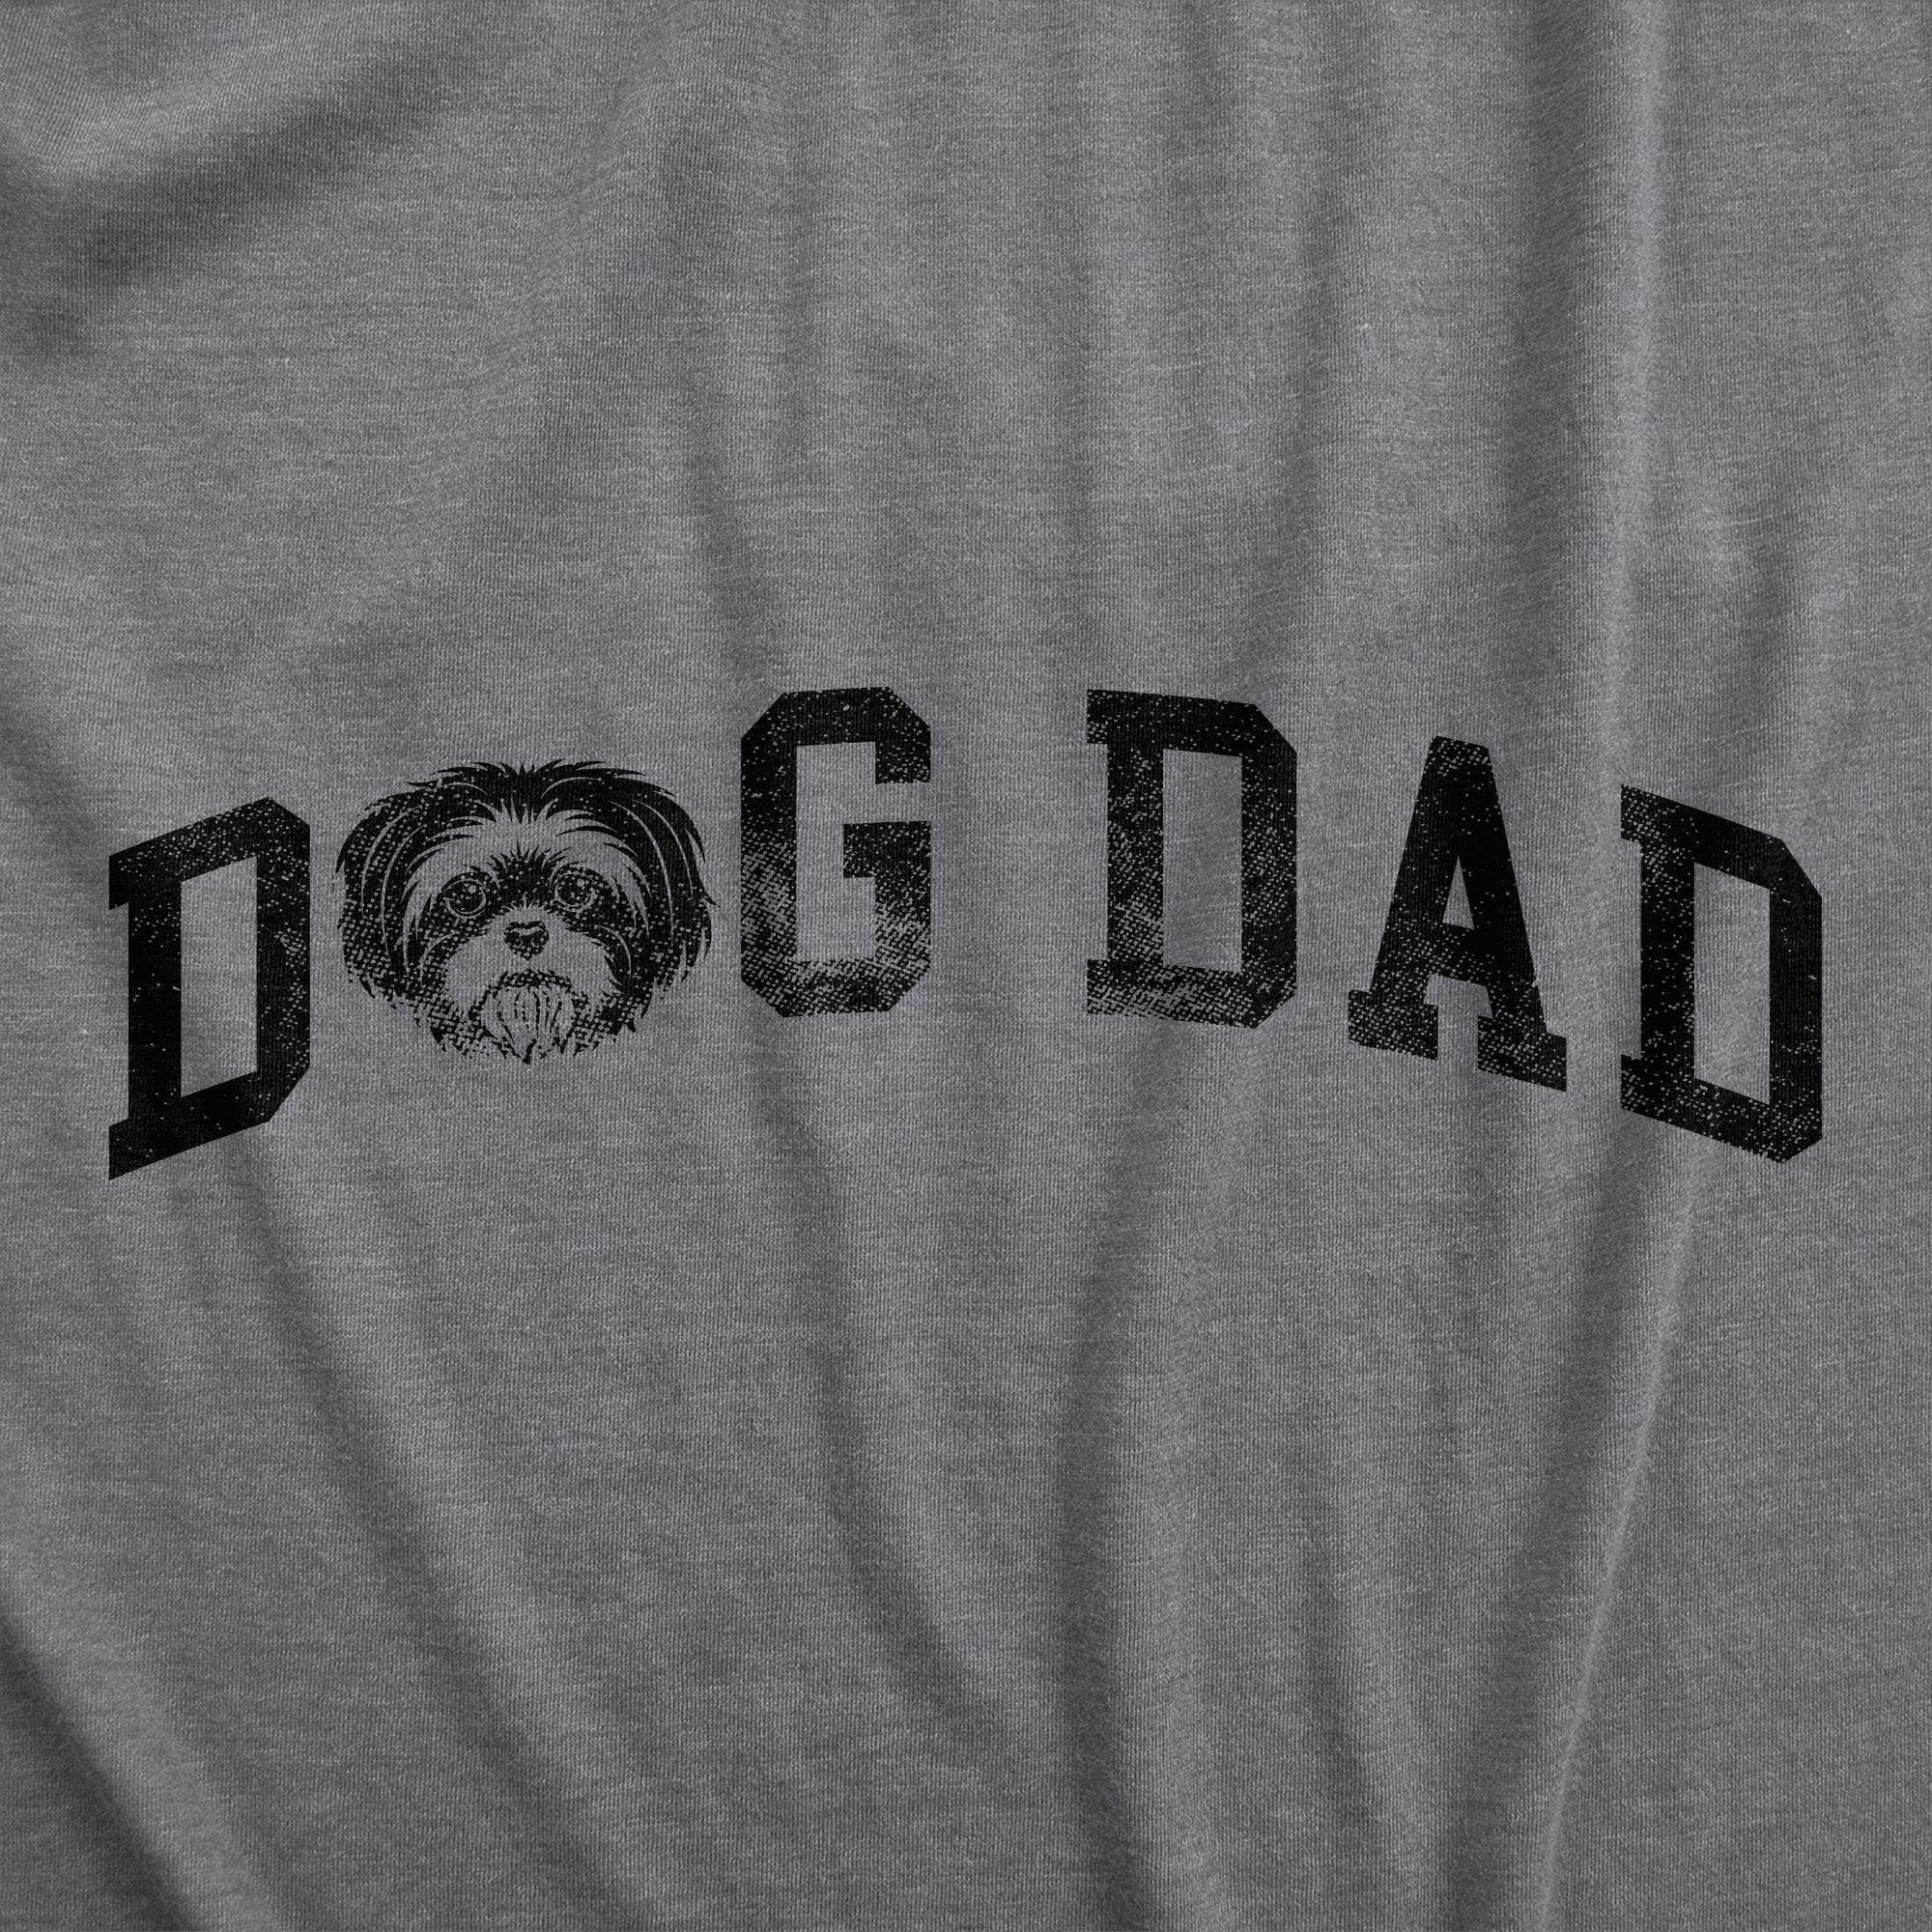 Dog Dad Shih Tzu Men's Tshirt  -  Crazy Dog T-Shirts